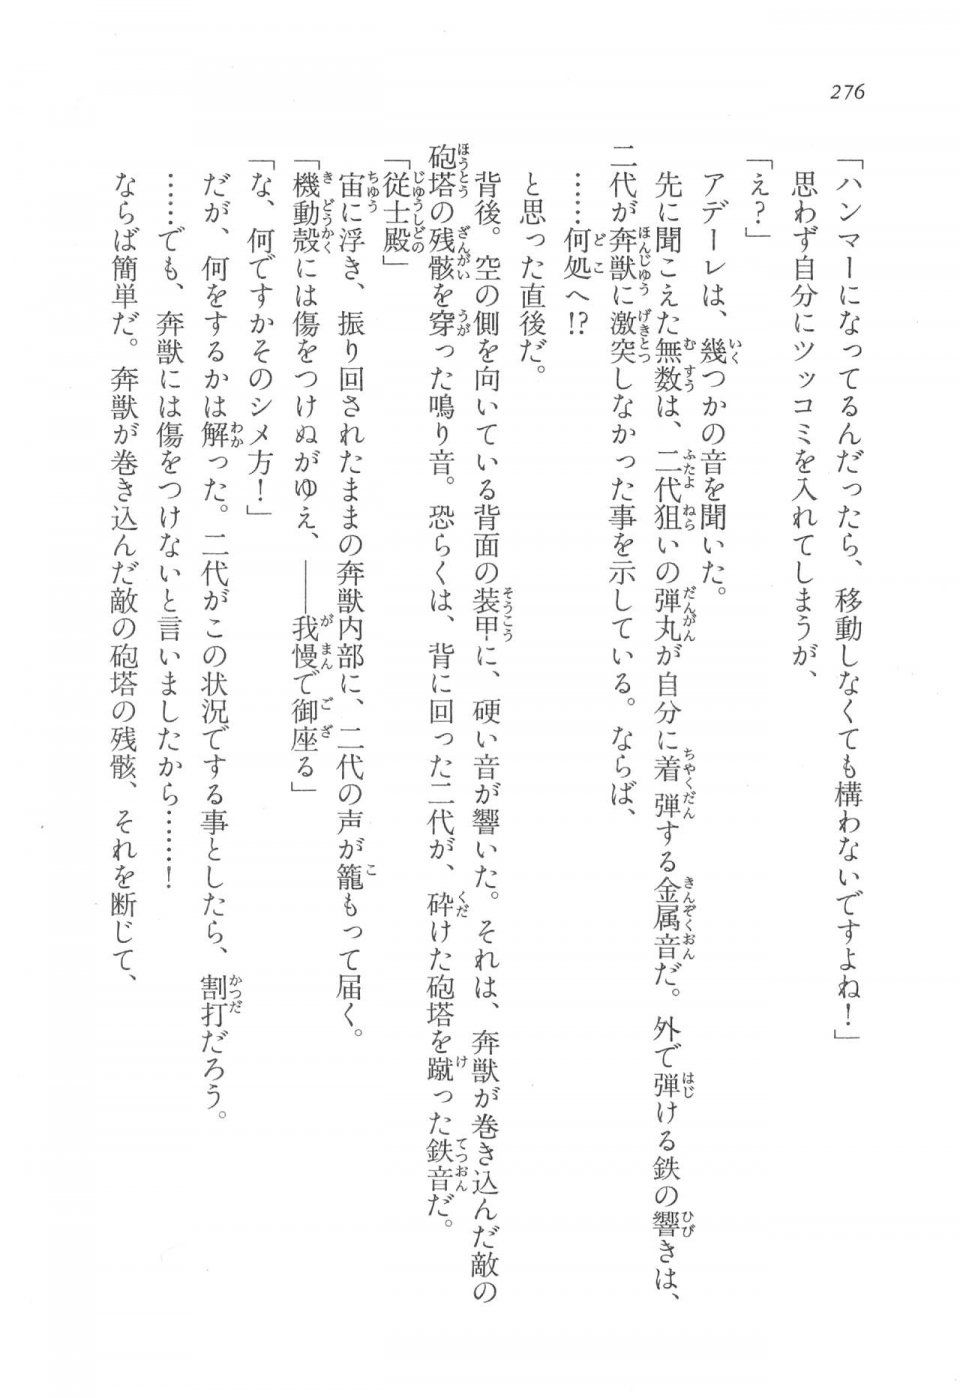 Kyoukai Senjou no Horizon LN Vol 17(7B) - Photo #276